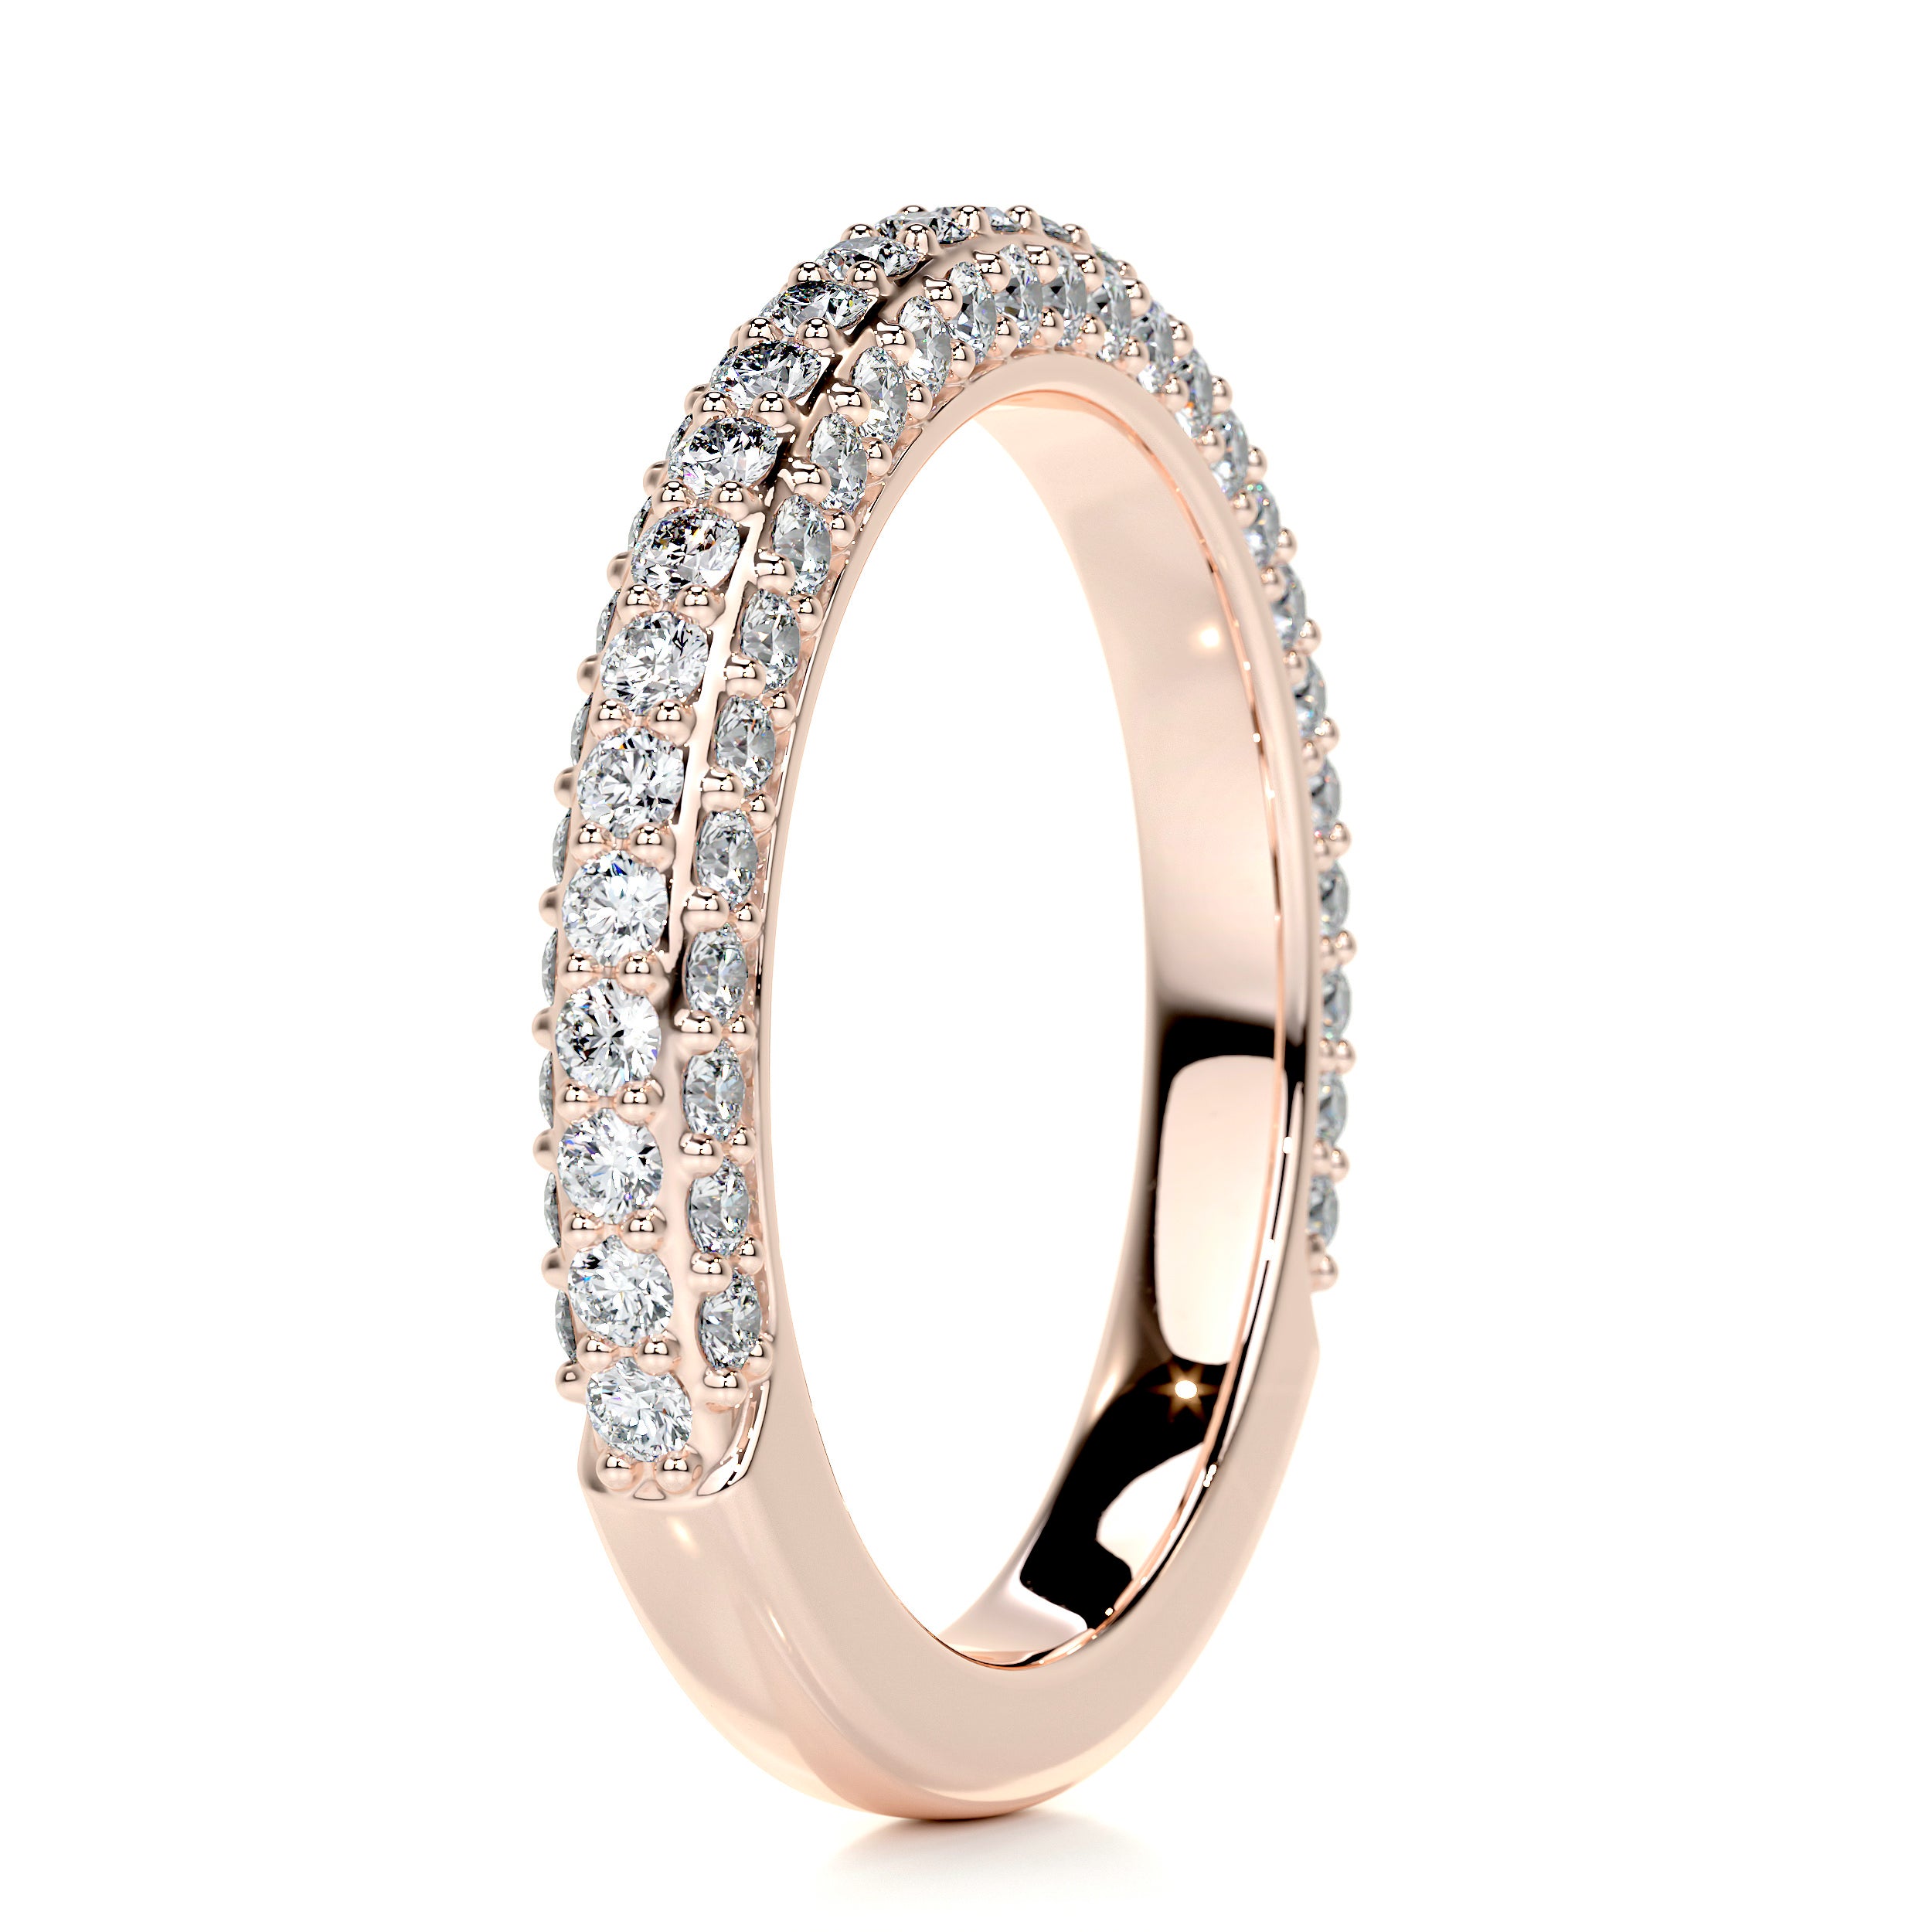 Anastasia Pave Diamond Wedding Ring (0.75 Carat) - 14K Rose Gold